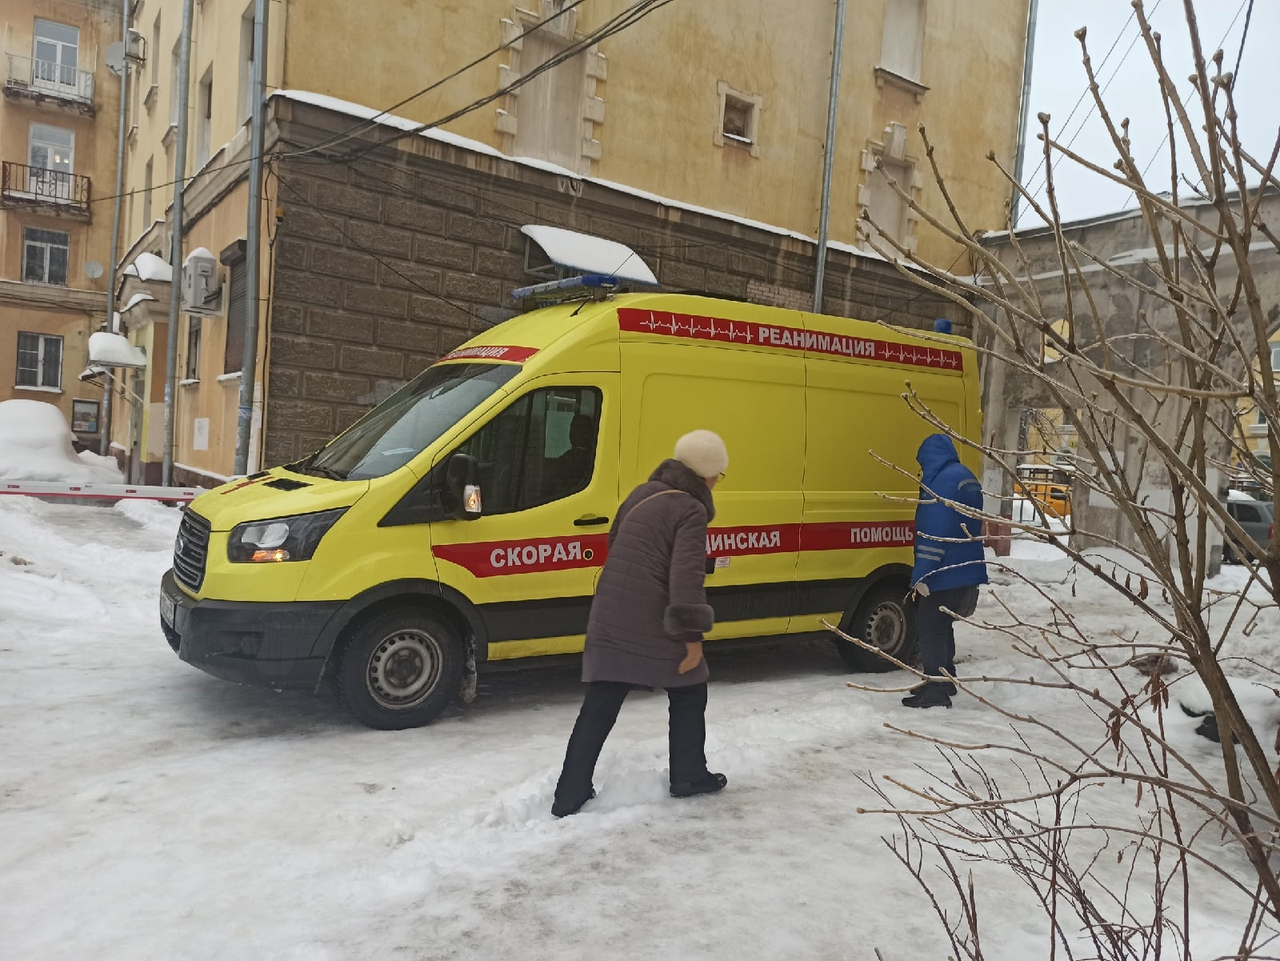 "Я не хочу, чтобы мои пациенты гибли": ярославский врач из Ярославля обратилась к чиновникам